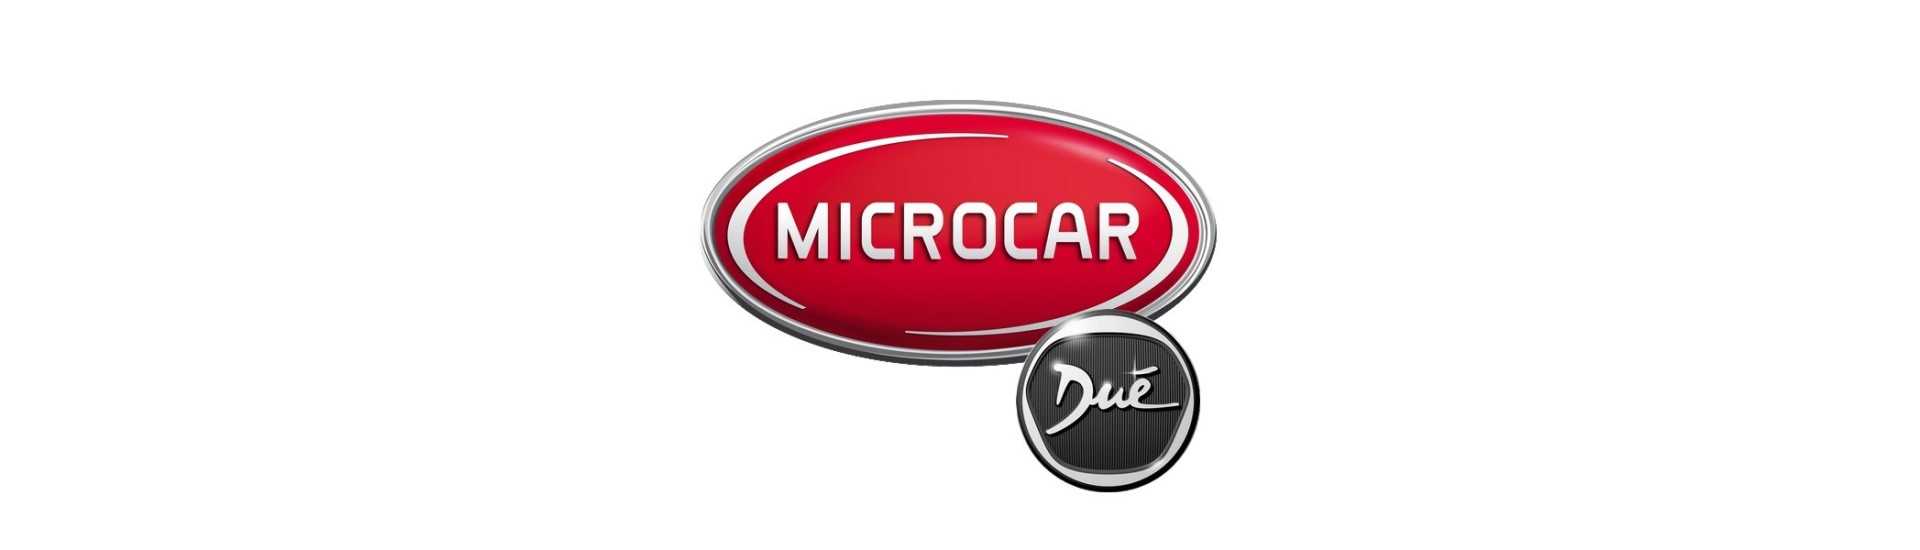 Neiman und Barrel zum besten Preis Auto ohne Lizenz Microcar Dué